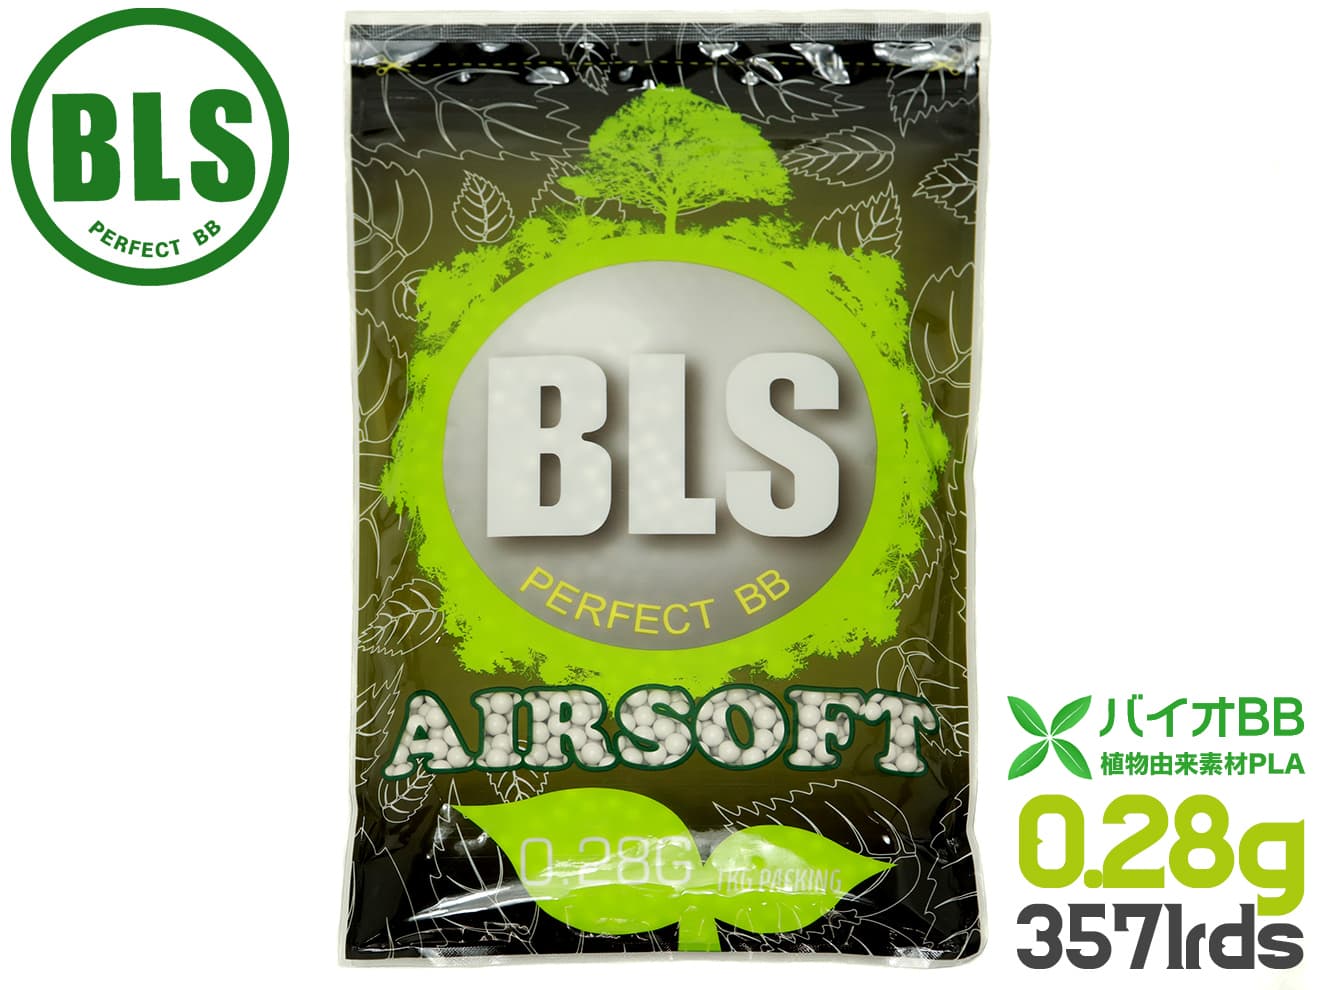 BLS 高品質PLA バイオBB弾 0.28g 3571発 1kg 植物由来バイオビービー弾 高精度 プラスチック 環境に優しい アウトドアフィールド